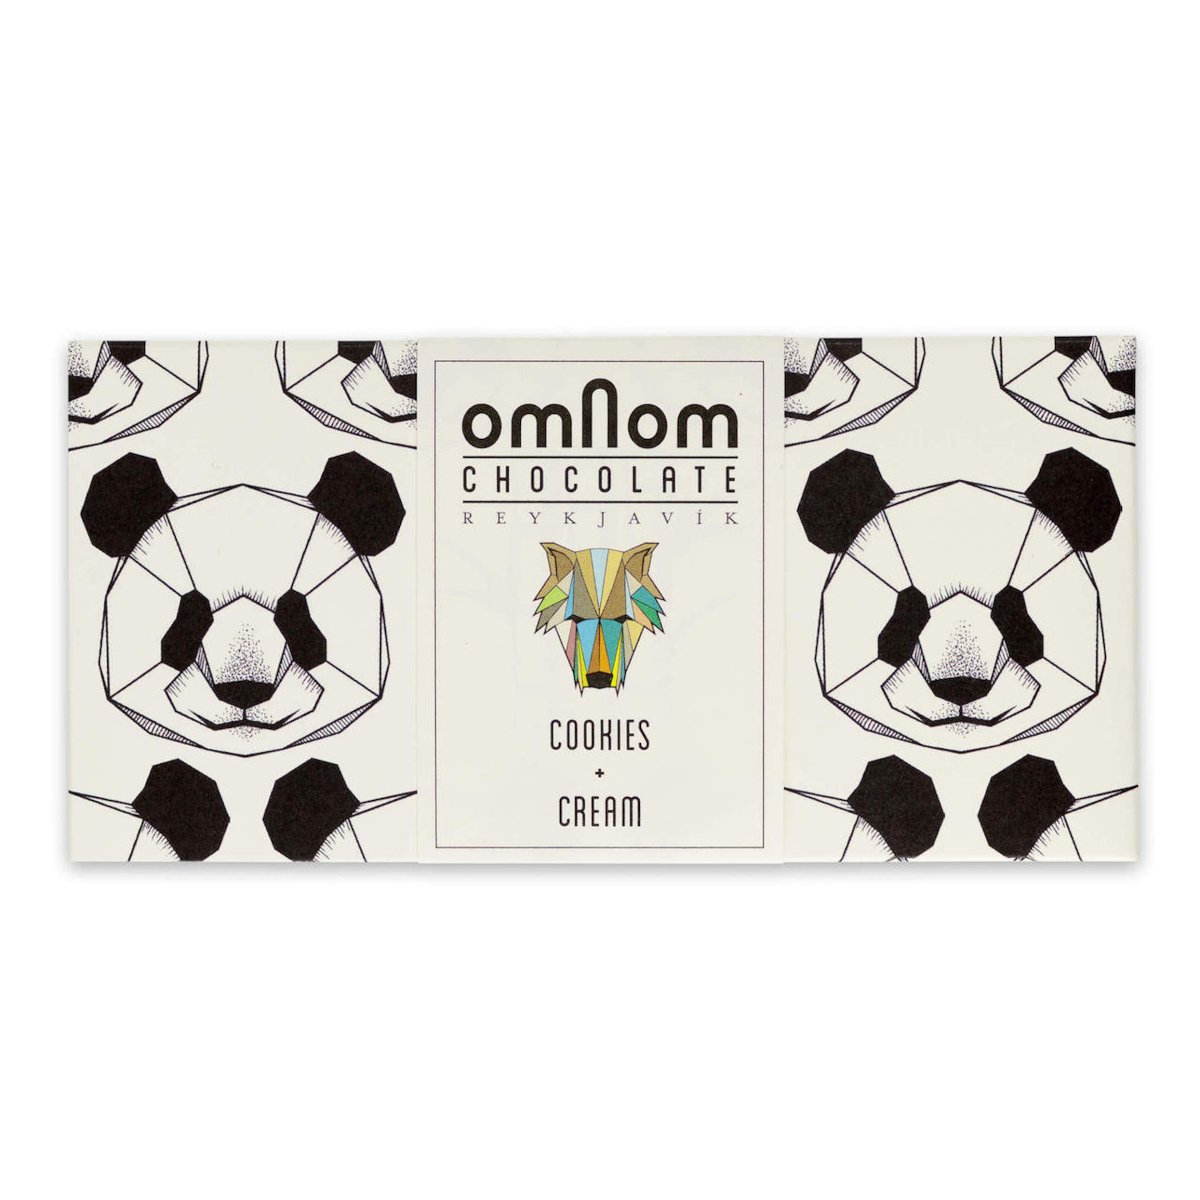 OMNOM Schokolade - Cookies und Cream - Ankerherz Verlag